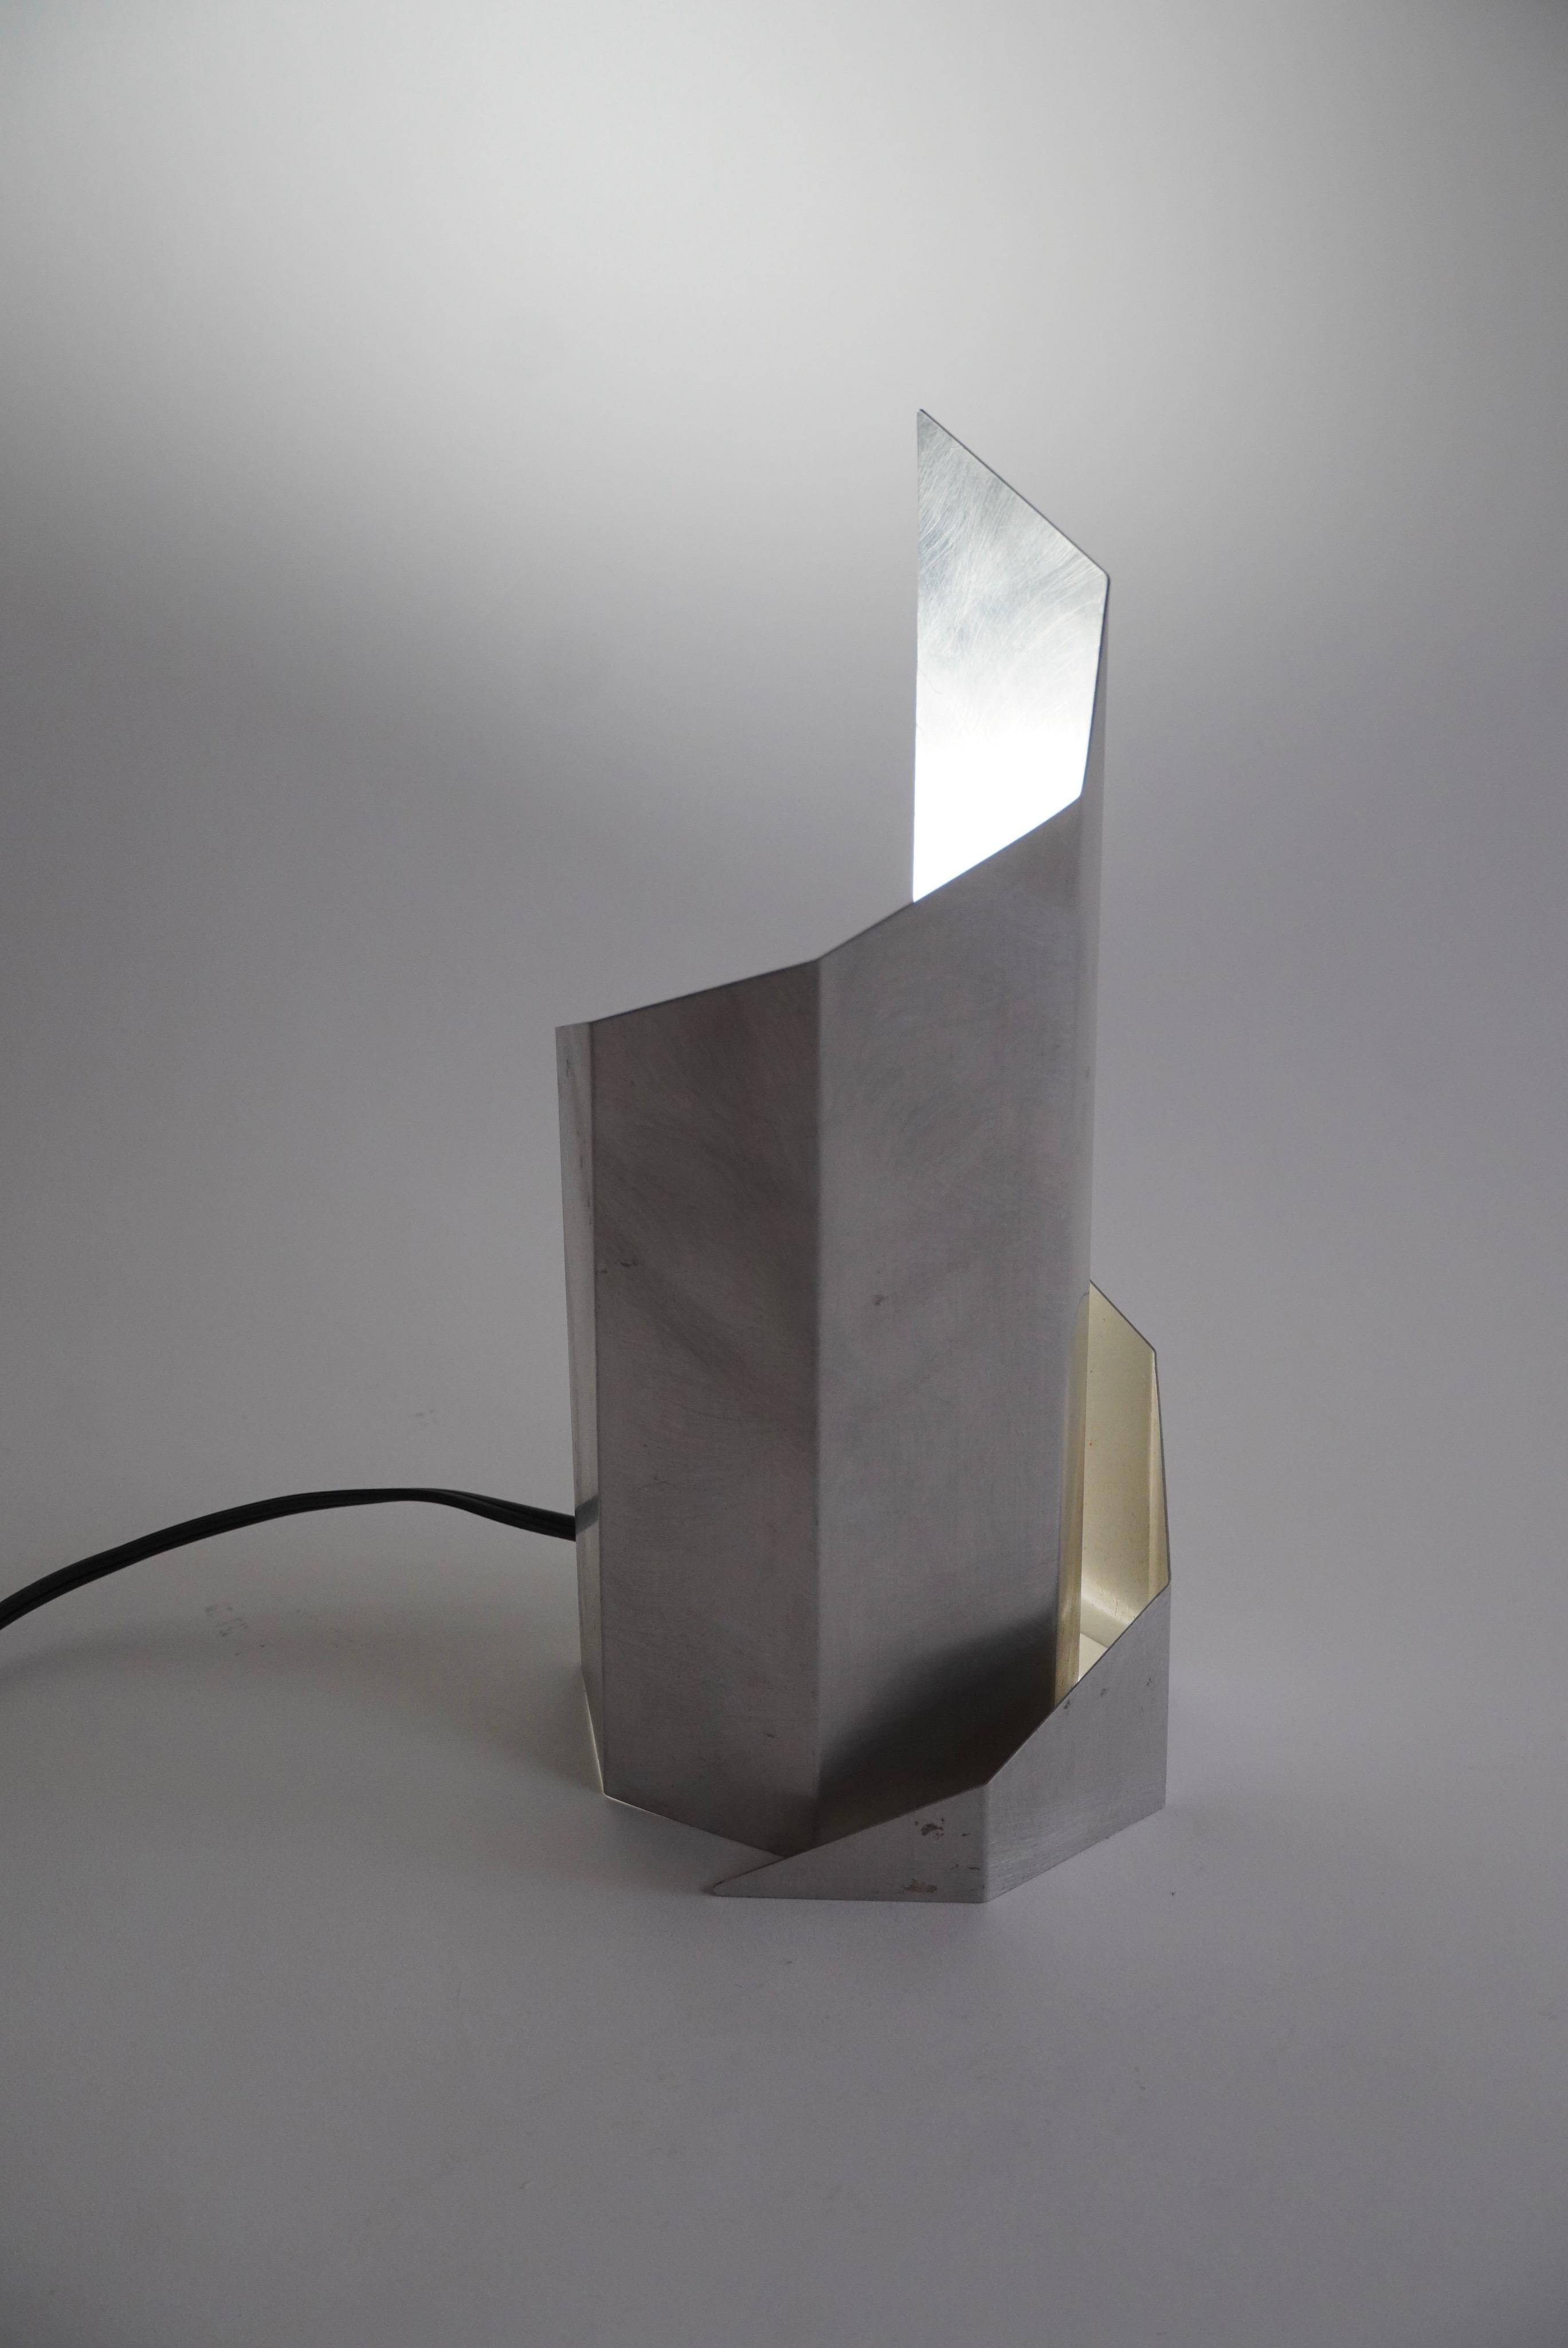 1970s Constructivist Table Lamp in Folded Aluminum by Godley-Schwan MoMA NY 1